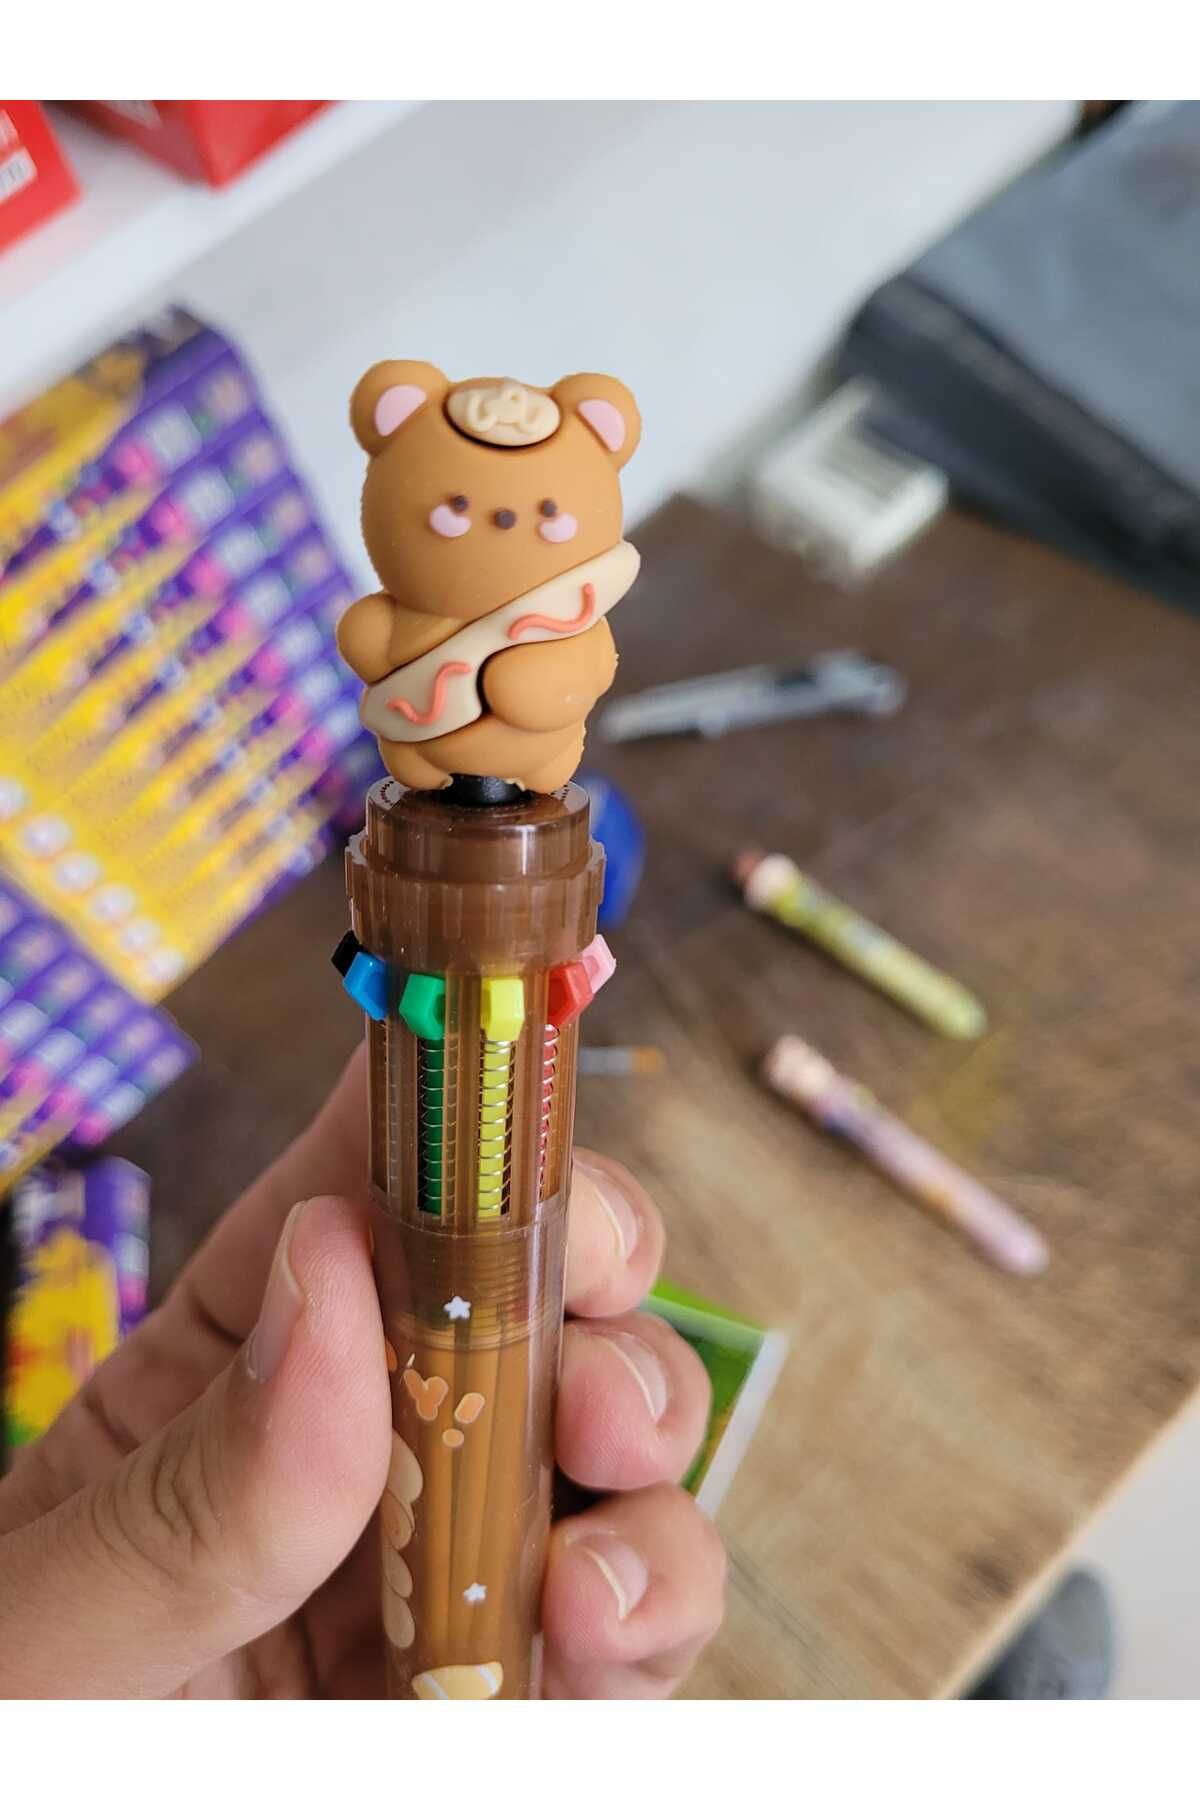 O&S Oyun ve Sanat Eğlen-Üret Hediyelik ayıcık kalem, 10 renk tükenmez kalem, tatlı tatlış ilkokul ortaokul çocuk hediye